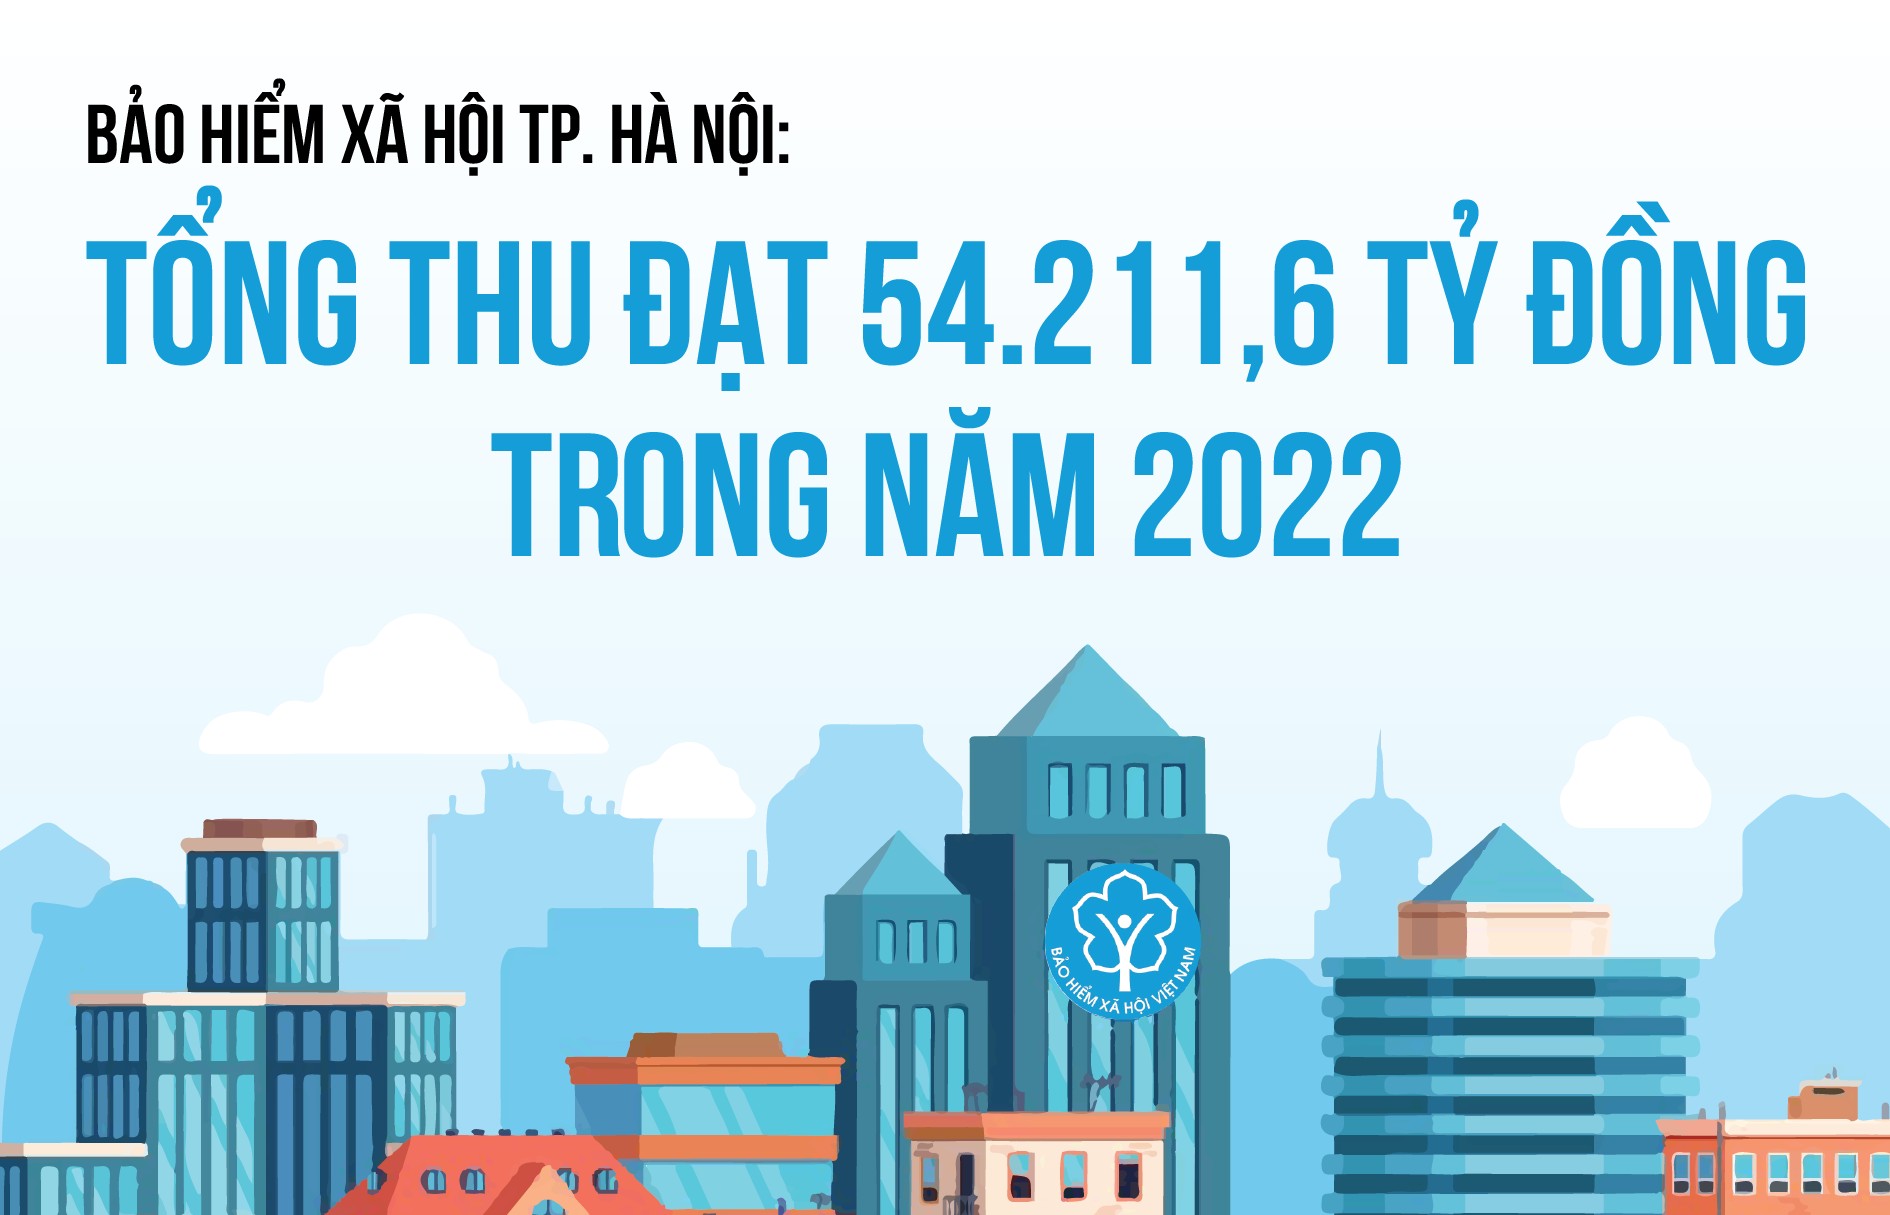 Bảo hiểm Xã hội TP. Hà Nội: Tổng thu đạt 54.211,6 tỷ đồng trong năm 2022